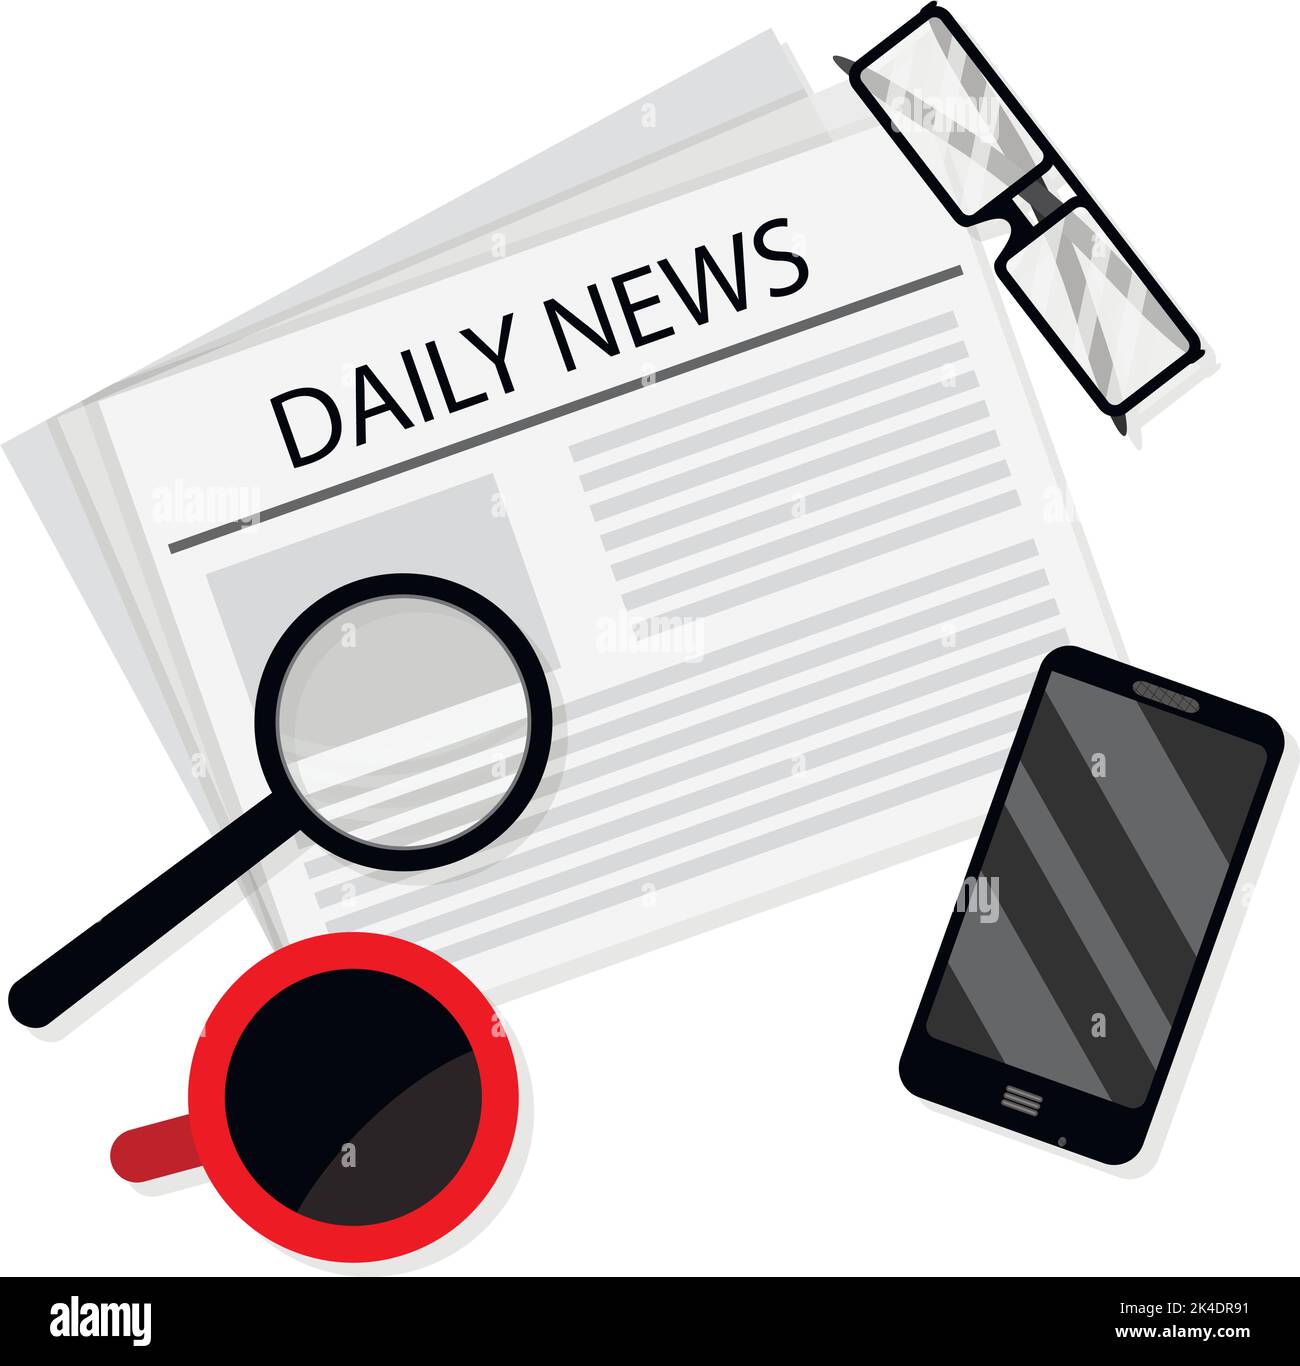 Daily News Concept, Business Morning neueste Zeitung und Kaffee. Vektorgrafik. Tägliches Pressekonzept, Zeitungsinformationen, Newsletter-Publicat Stock Vektor